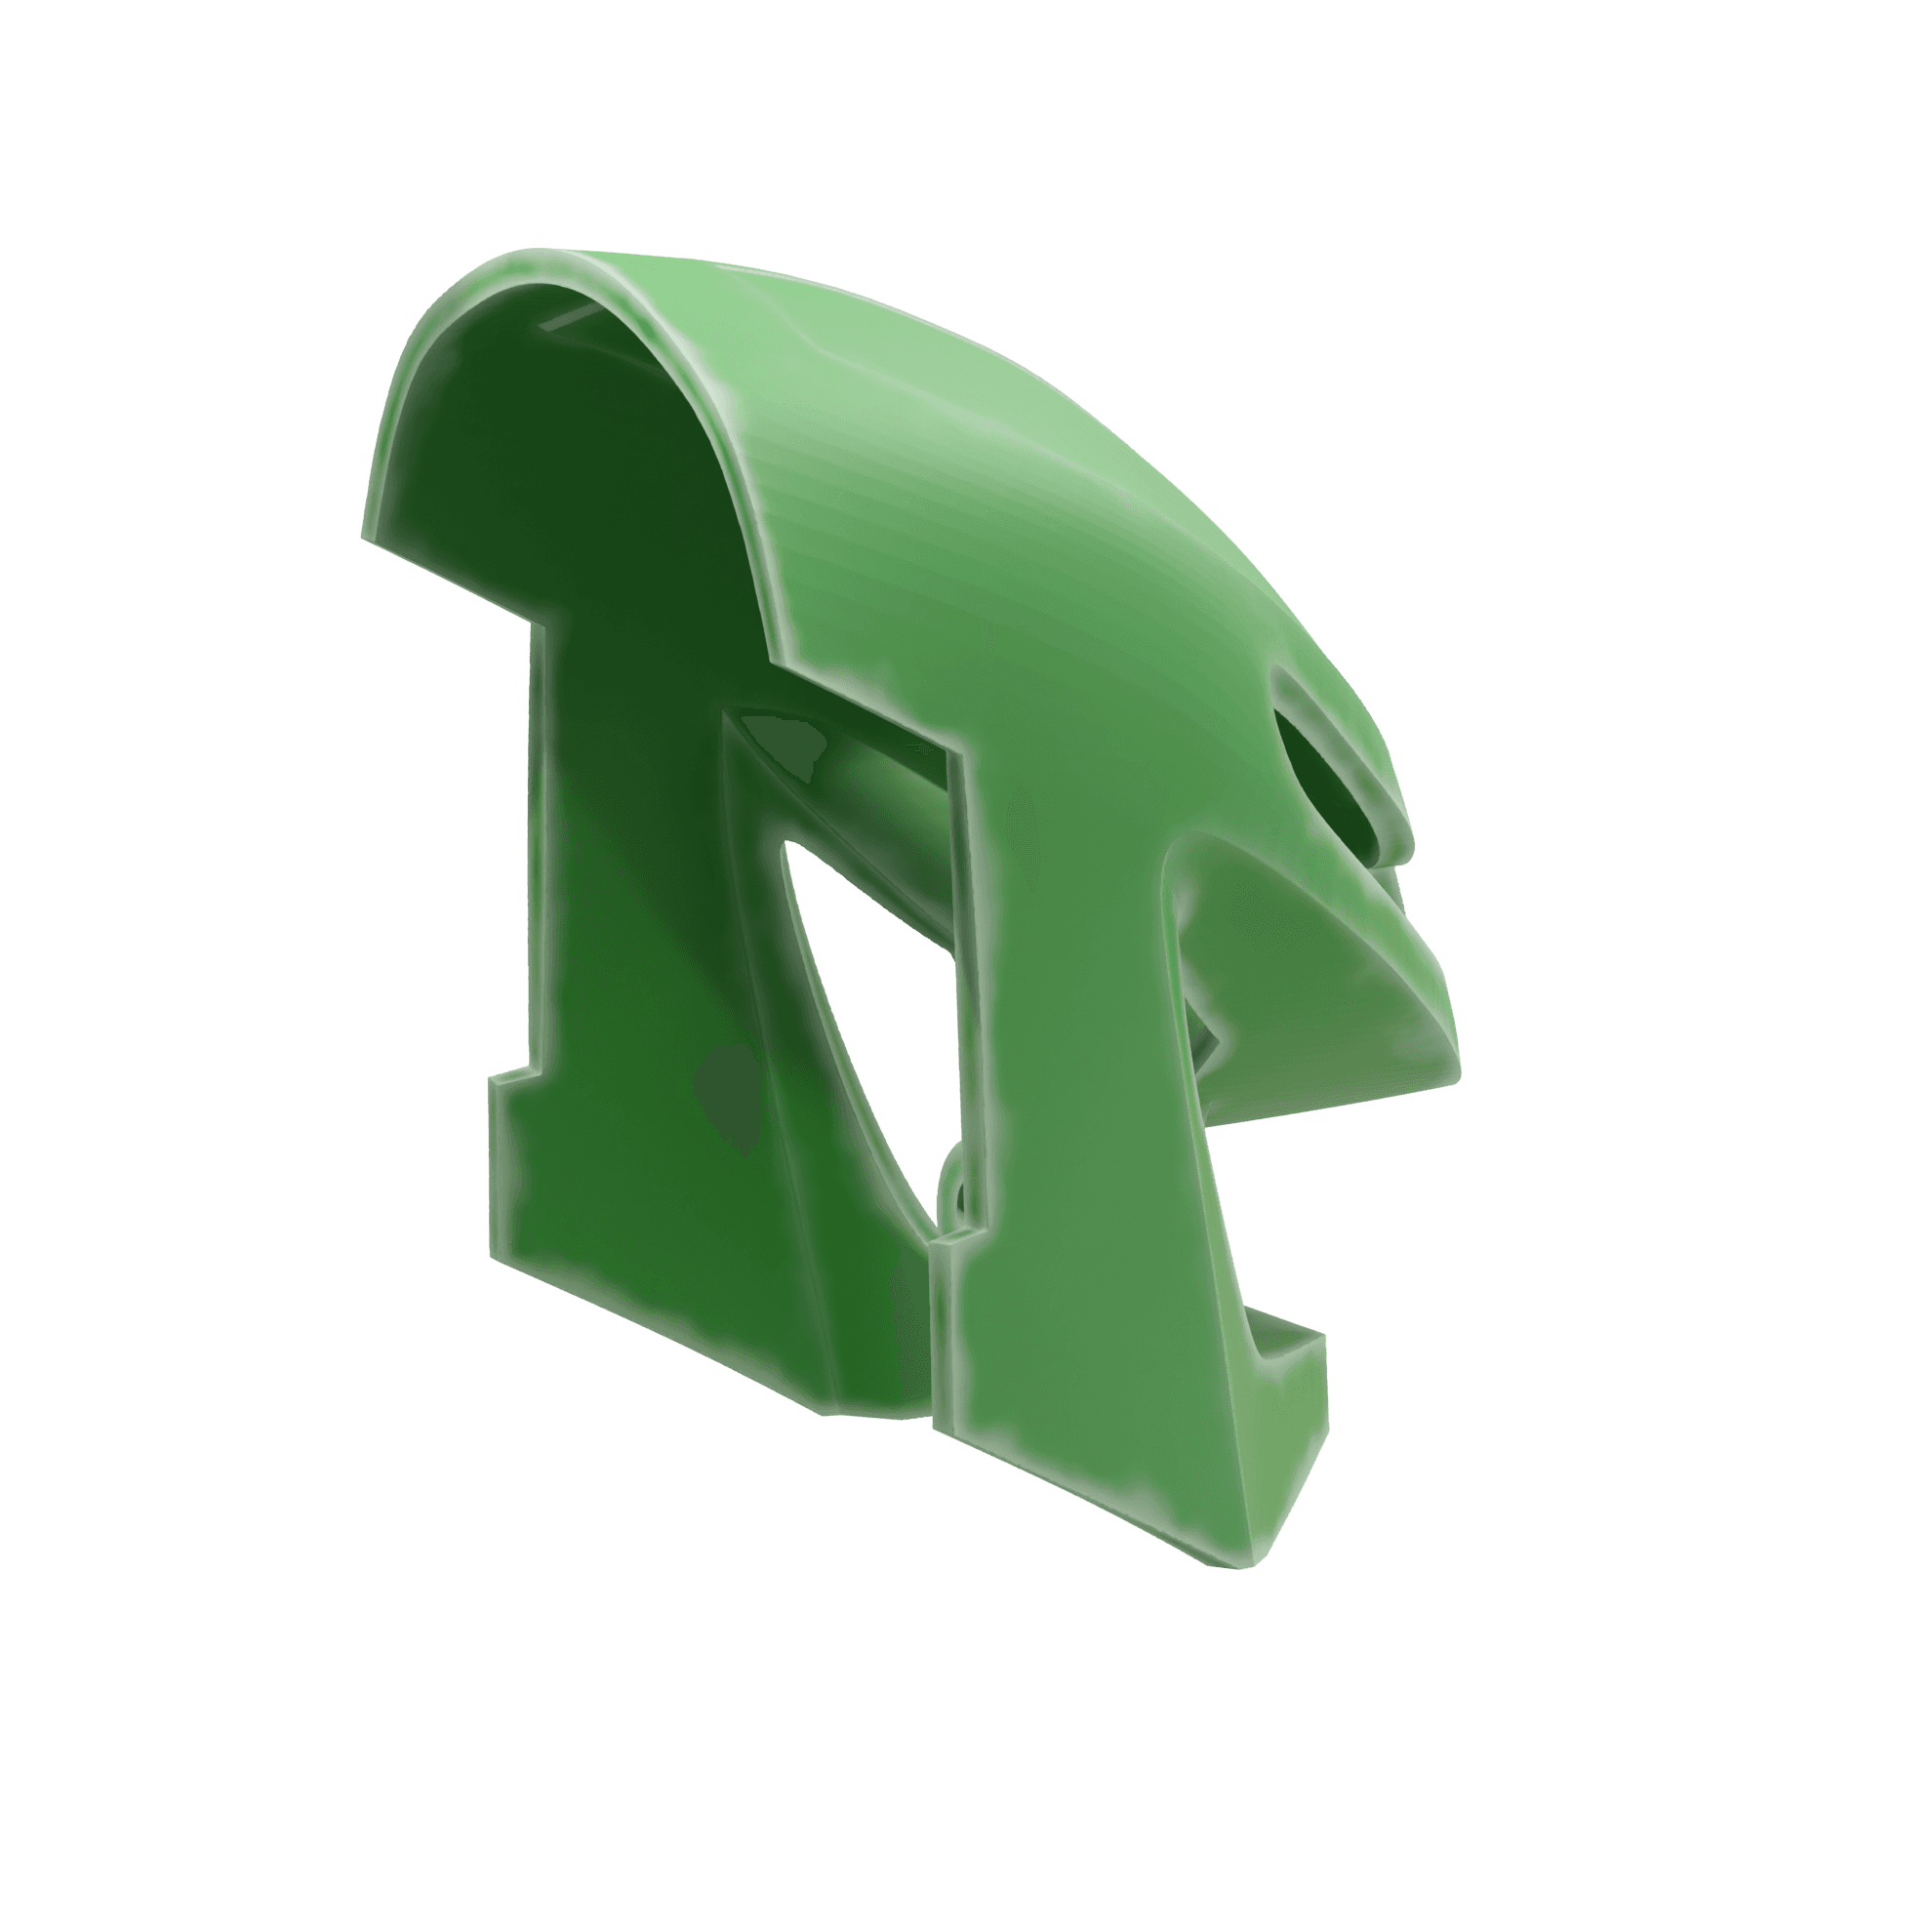 Bionicle Mask Green 3d model